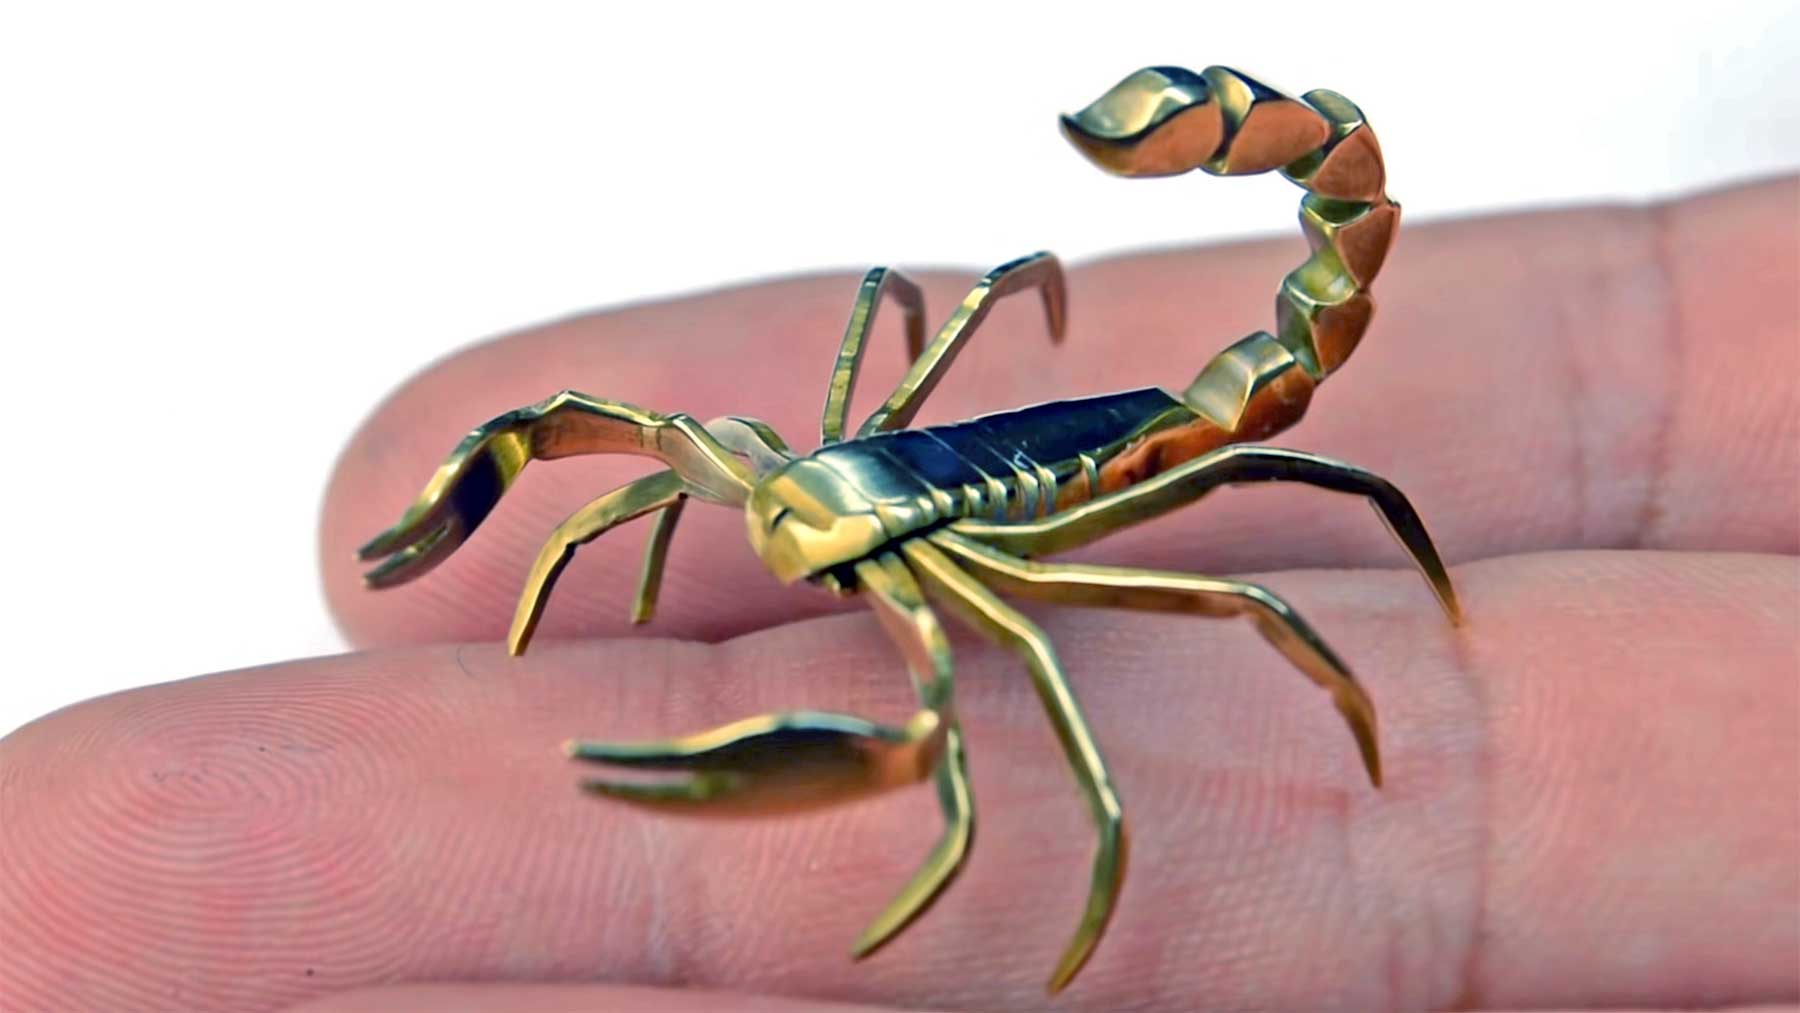 Skorpion aus einer einzelnen Schraube gefertigt miniatur-skorpion-aus-einzelner-schraube-gemacht 